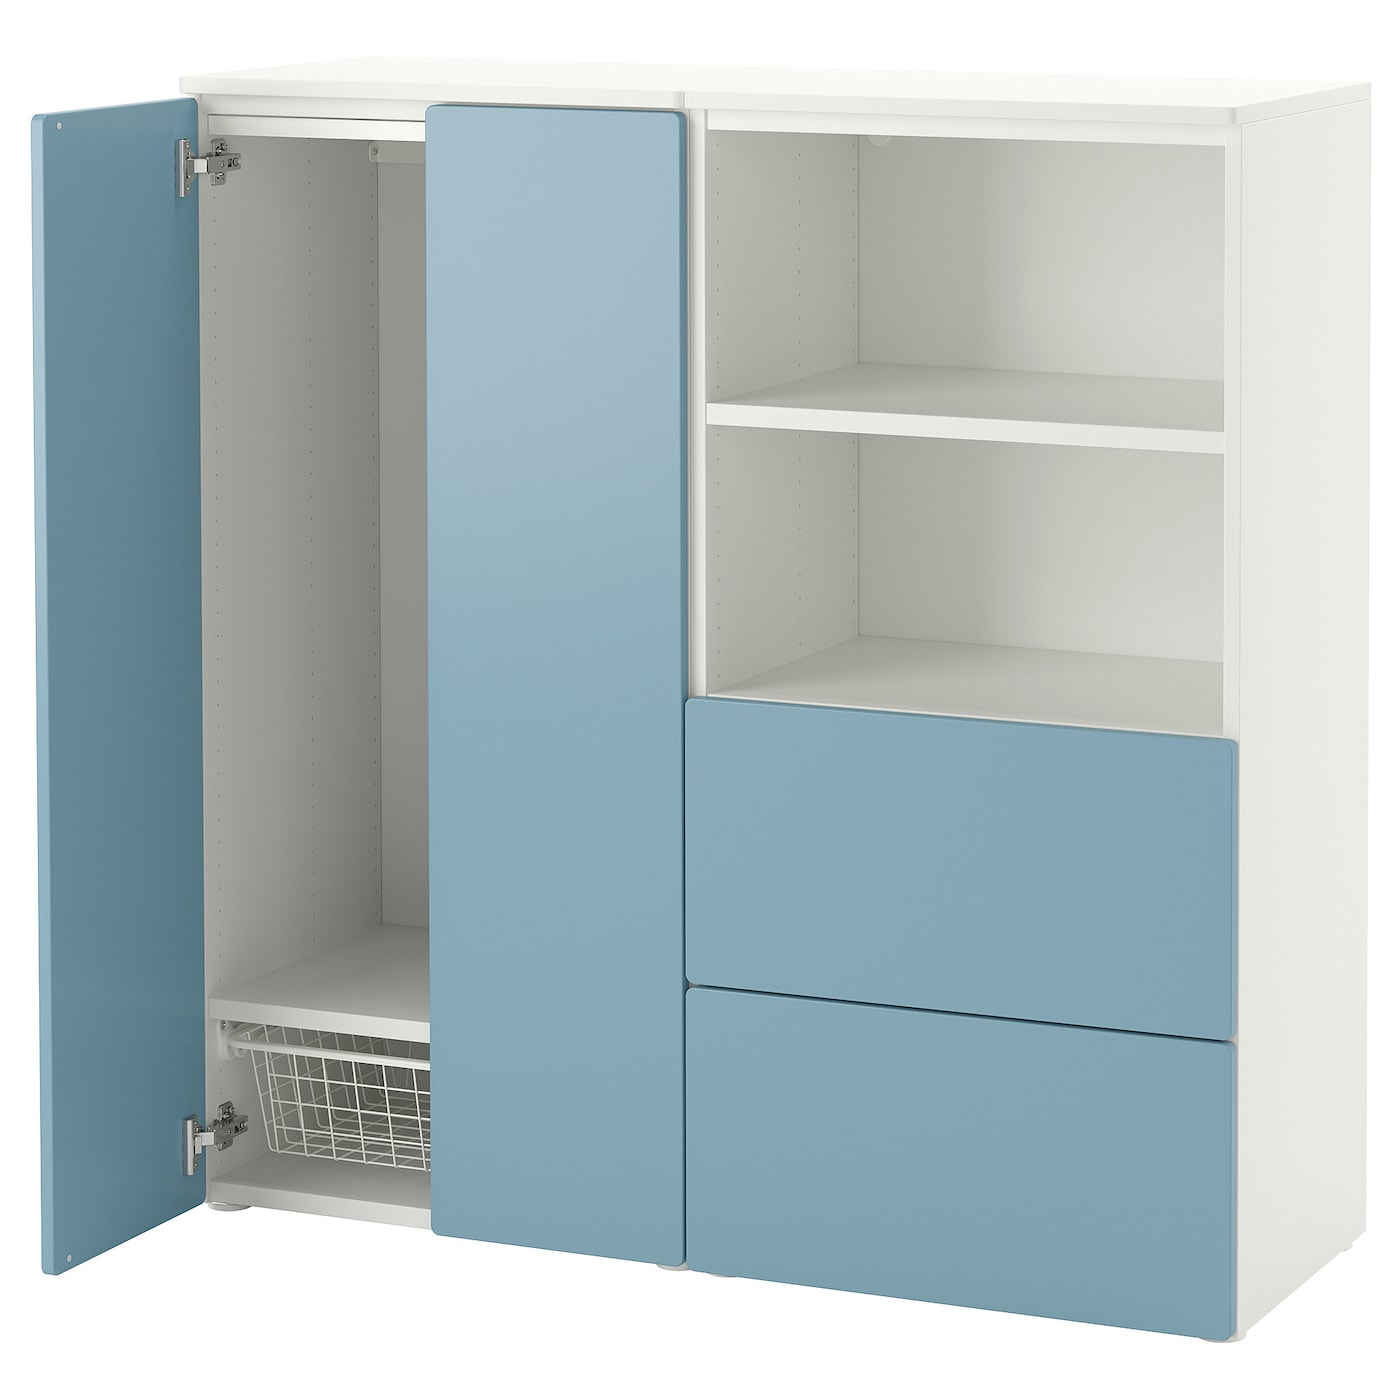 Шкаф - SMÅSTAD / PLATSA/ SMАSTAD  IKEA/ СМОСТАД / ПЛАТСА ИКЕА, 123х120 см, белый/голубой